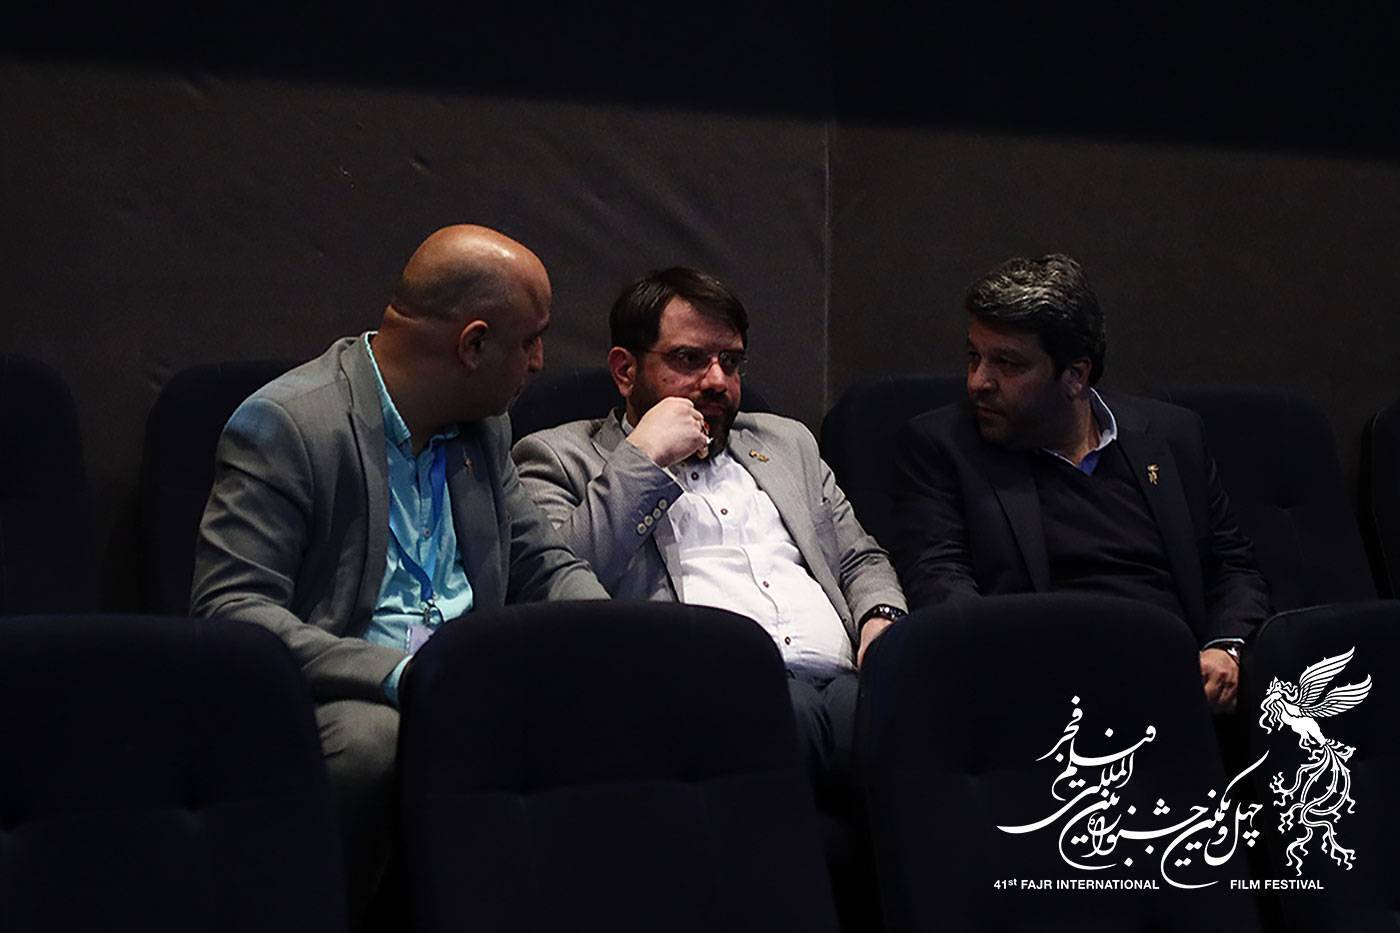 در انتظار کت چرمی با جواد عزتی و بعد از رفتن با صابر ابر / توجیه دبیر جشنواره درباره عدم اعلام داوران بخش ملی